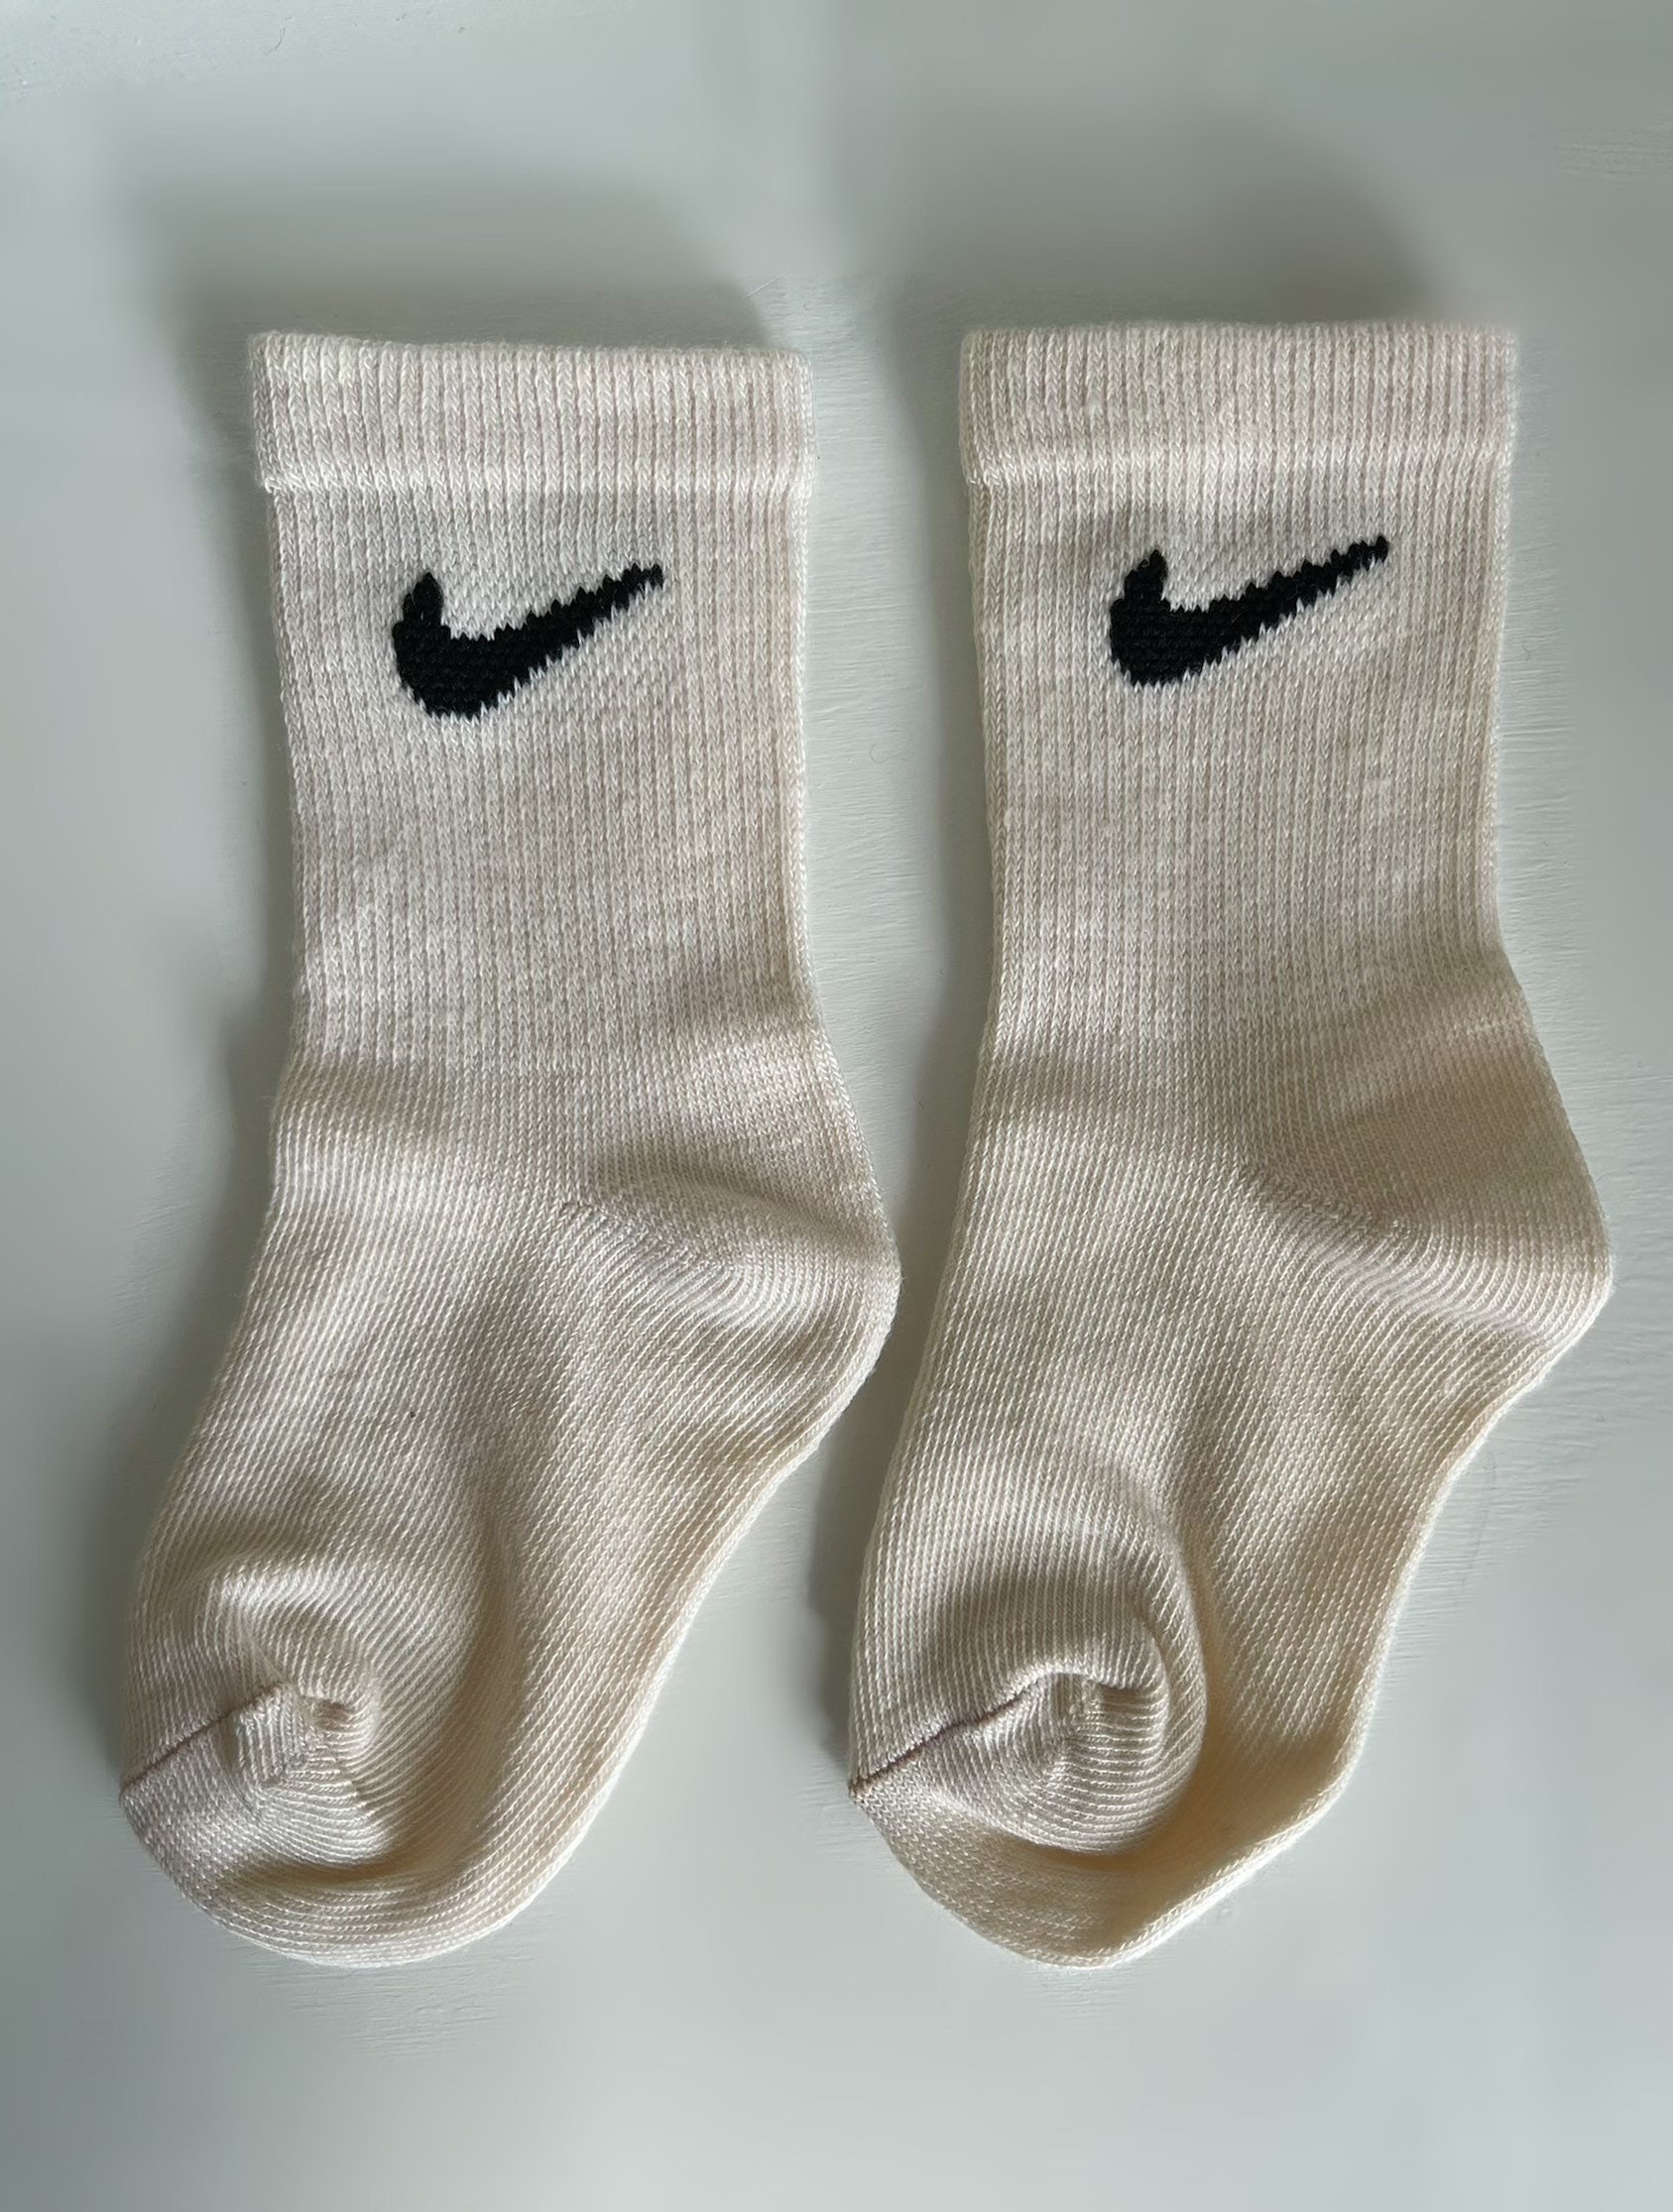 Nike baby kids toddler caramel socks custom colour beige tones | Etsy